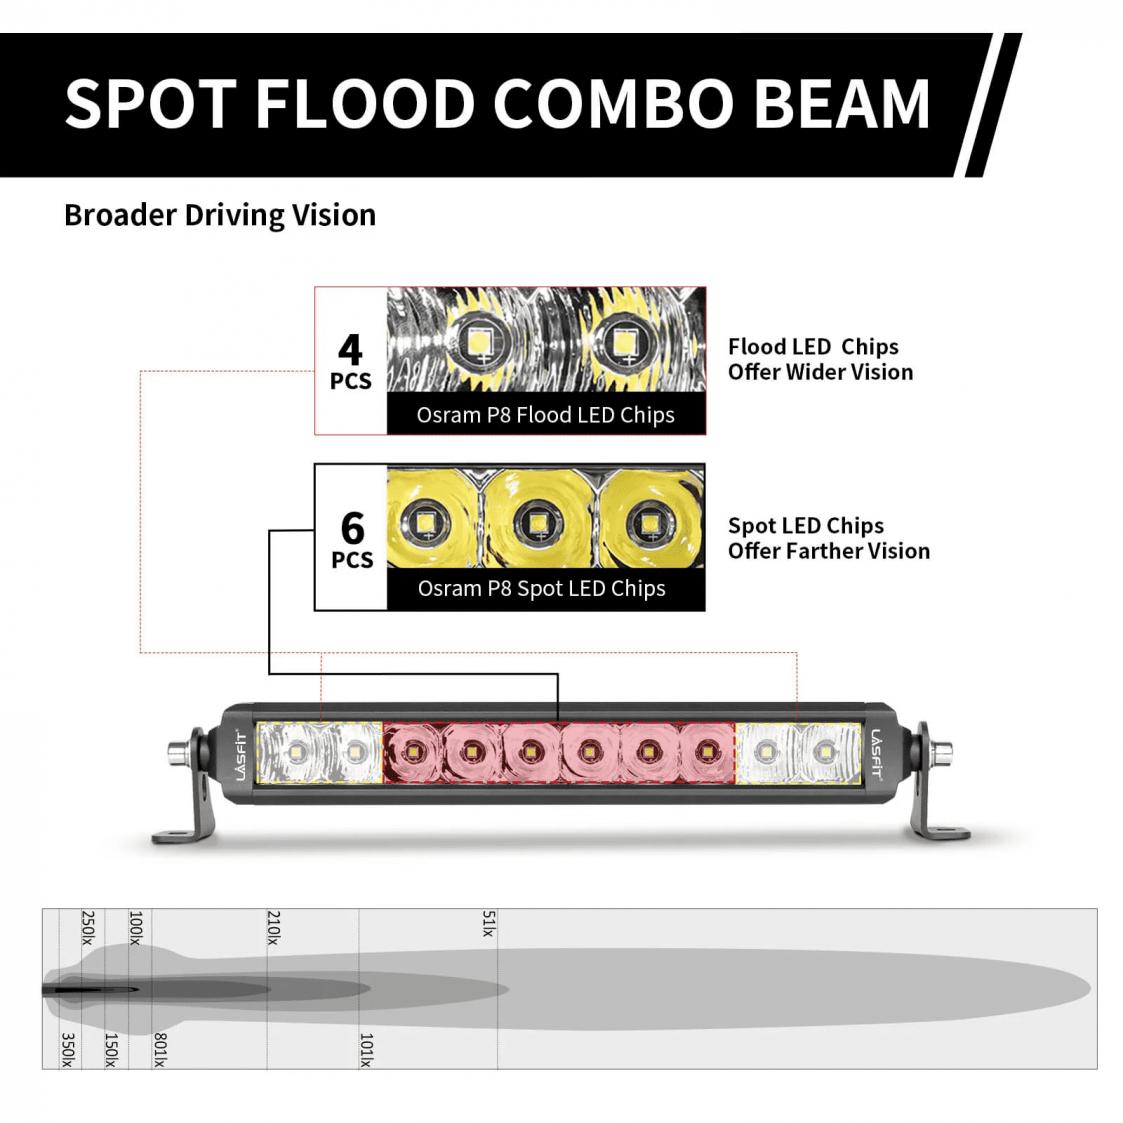 Lasfit LED Light Bars - High-Quality Combo Lense Light Bar For Your Budget-1-flood-spot-combo-beam-jpg